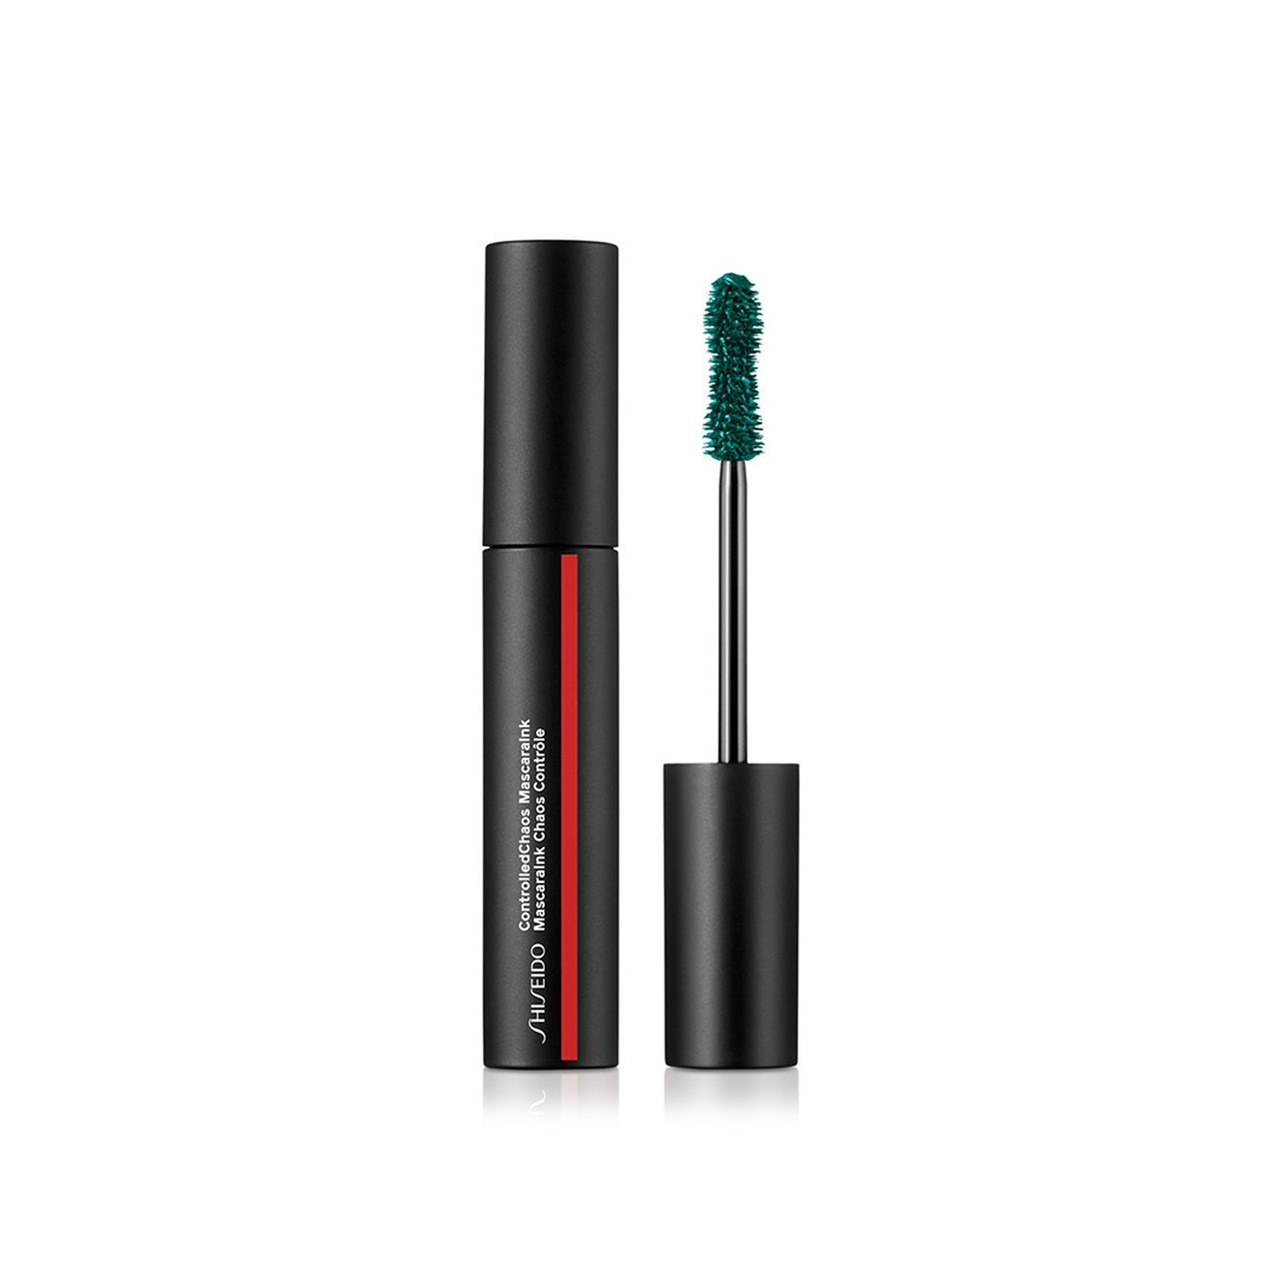 Shiseido ControlledChaos MascaraInk 04 Emerald Energy 11.5ml